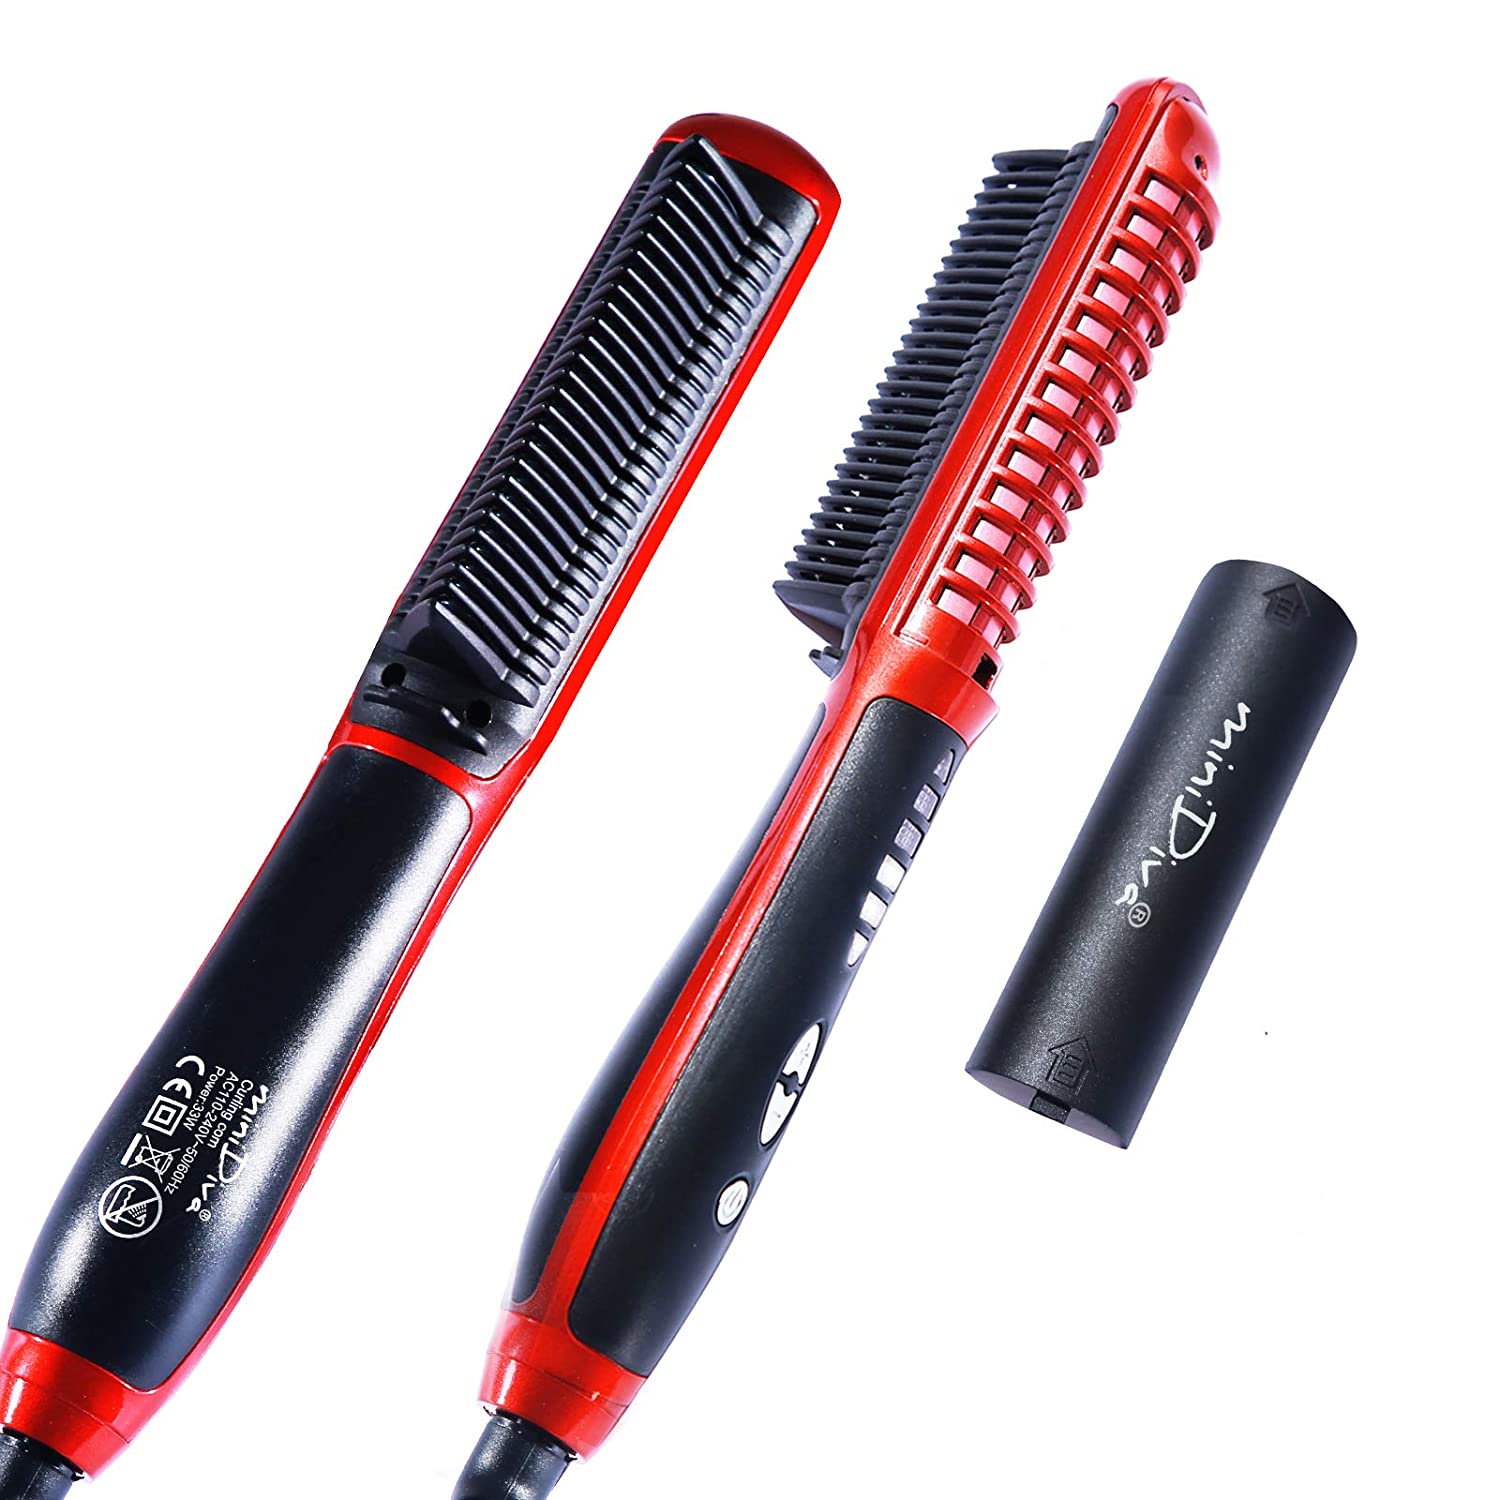 2 in 1 Hair Straightener Brush For Short-Shoulder Length Hair | Diva X